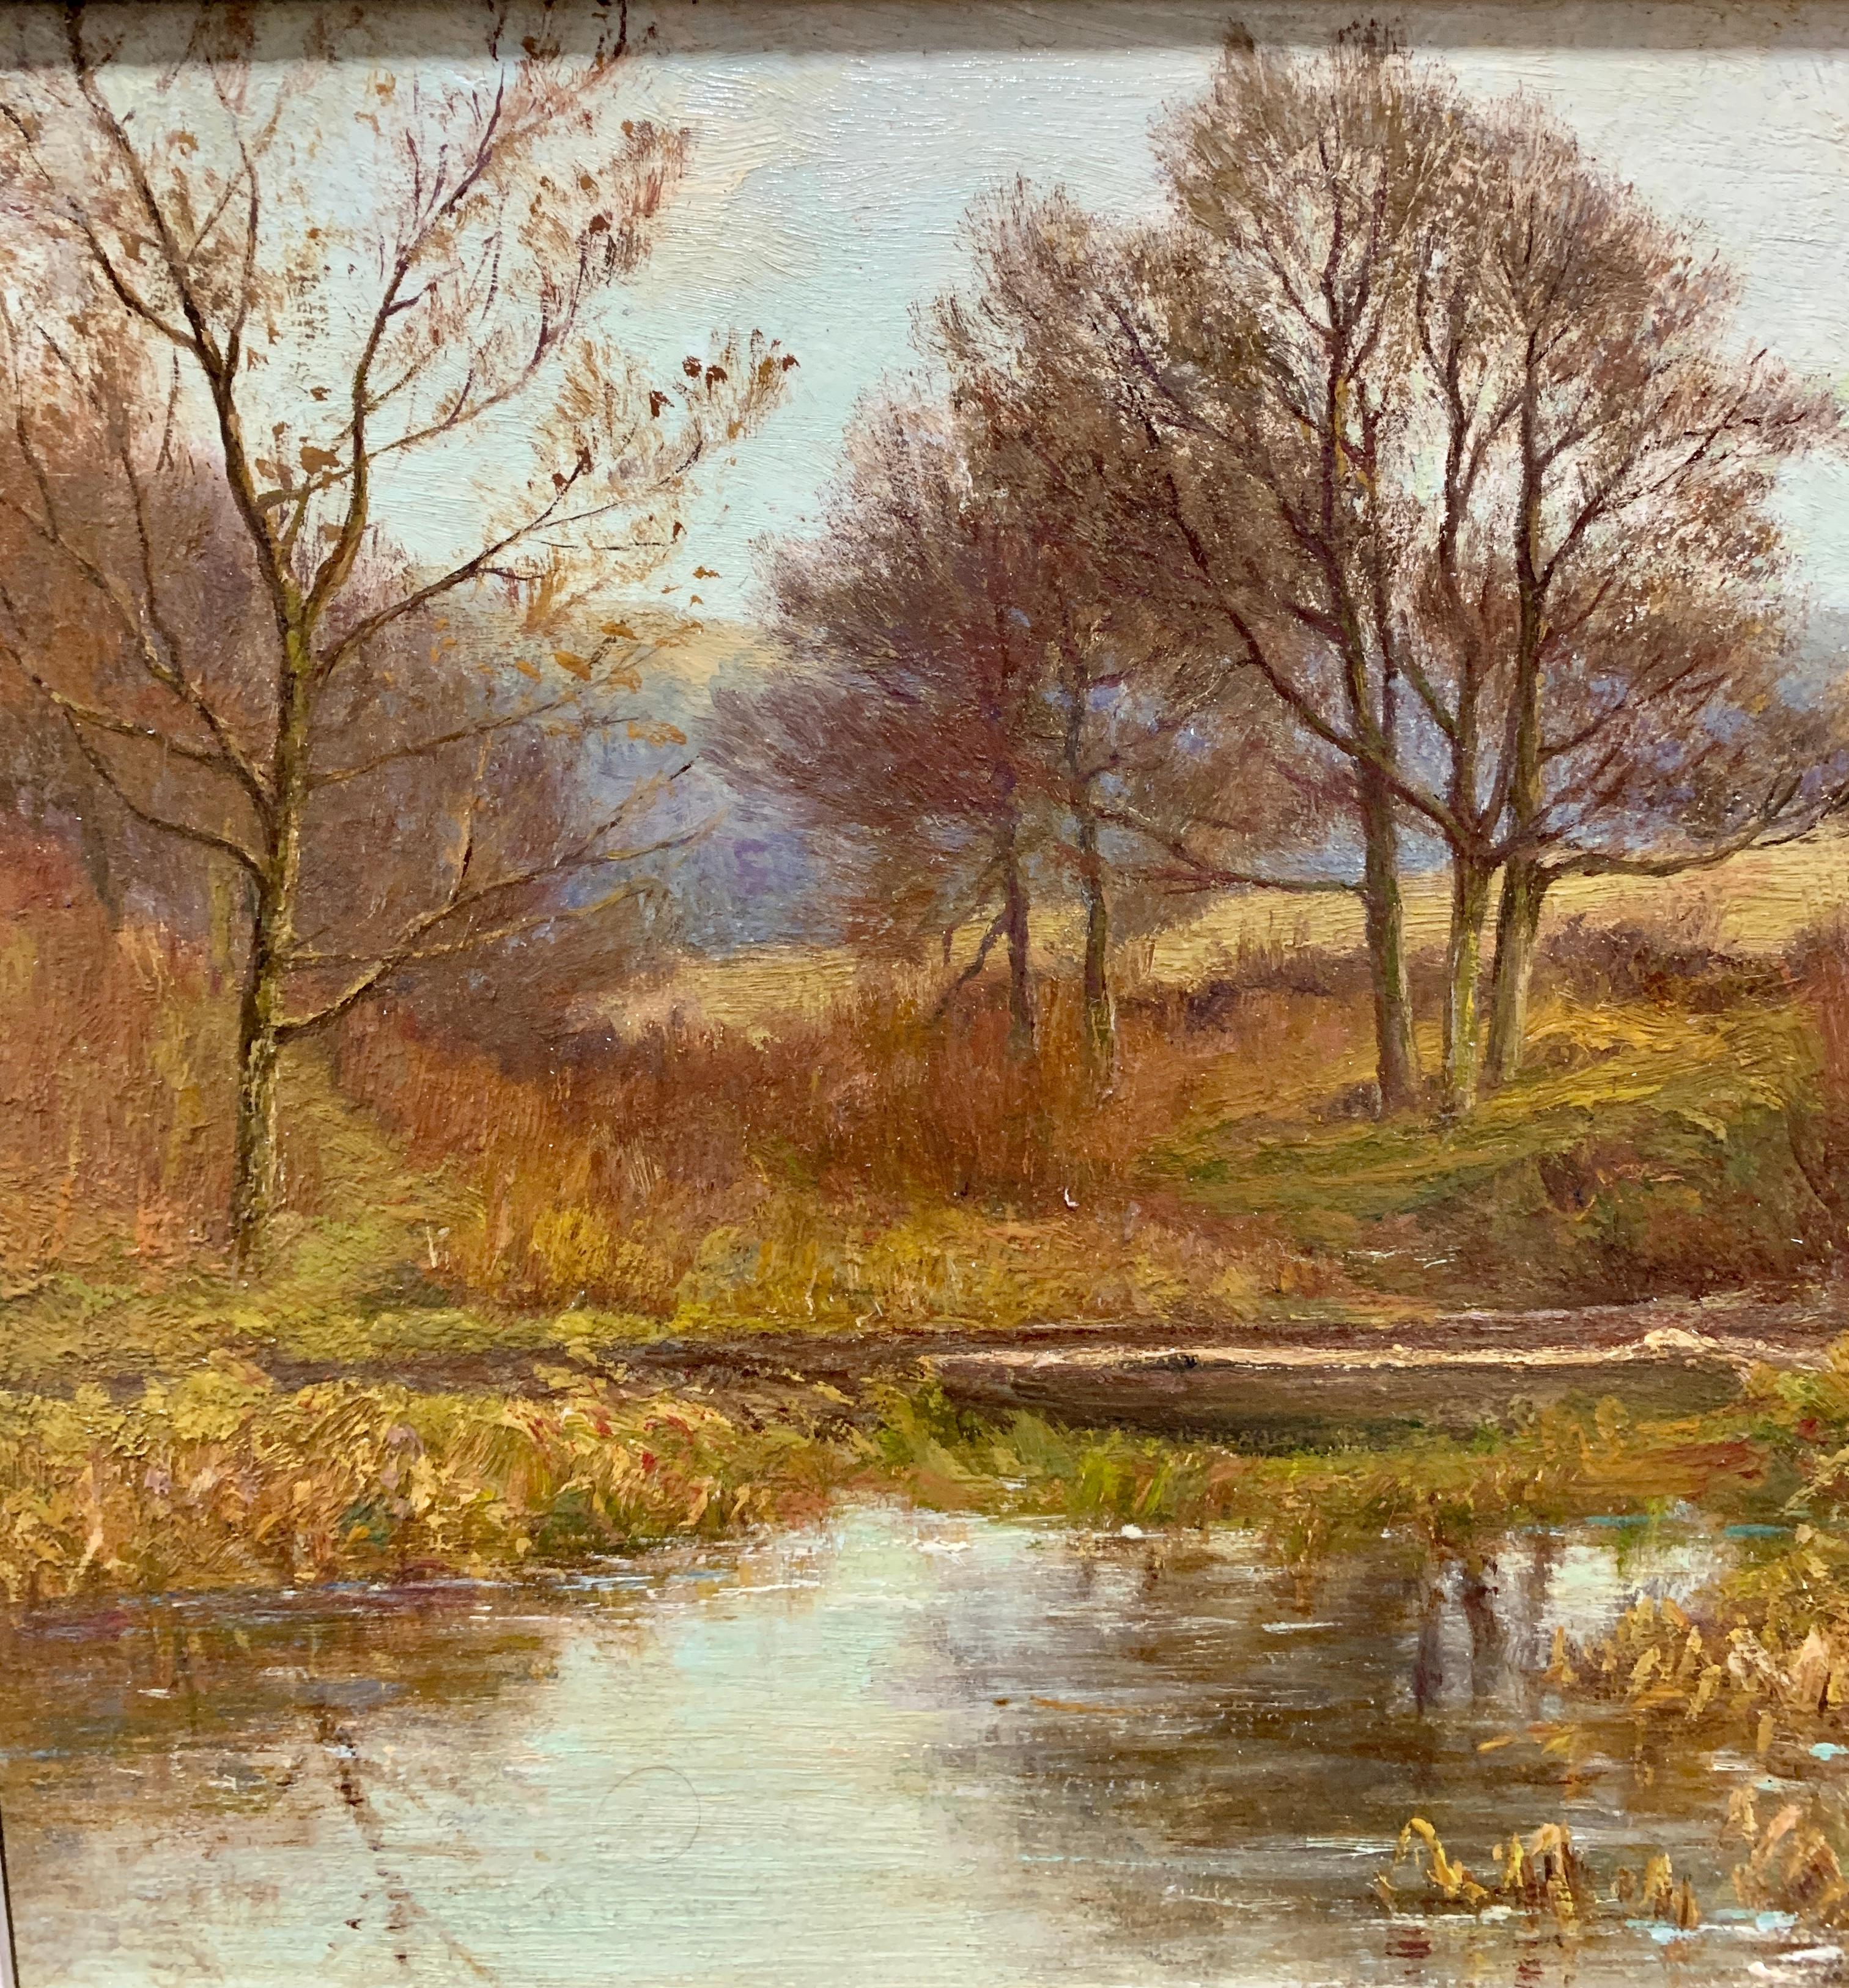 Merveilleux paysage fluvial victorien anglais. 

Thomas O Hume est un peintre paysagiste anglais qui a exposé de 1864 à 1892.

Il a exposé ses peintures à la Royal Academy, au British Institute et à la Walker Gallery de Liverpool, à la Manchester